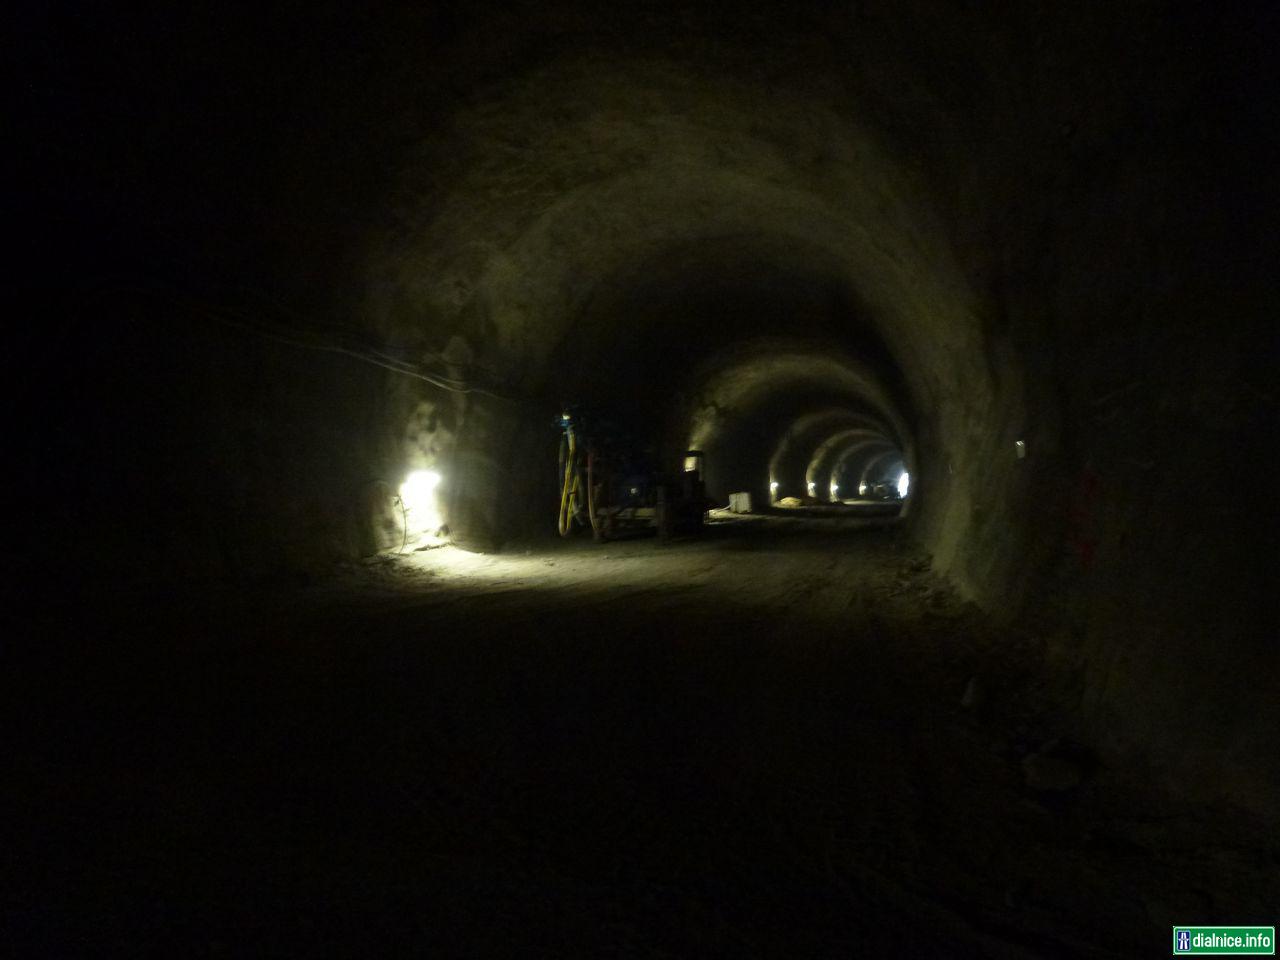 Tunel Považský Chlmec